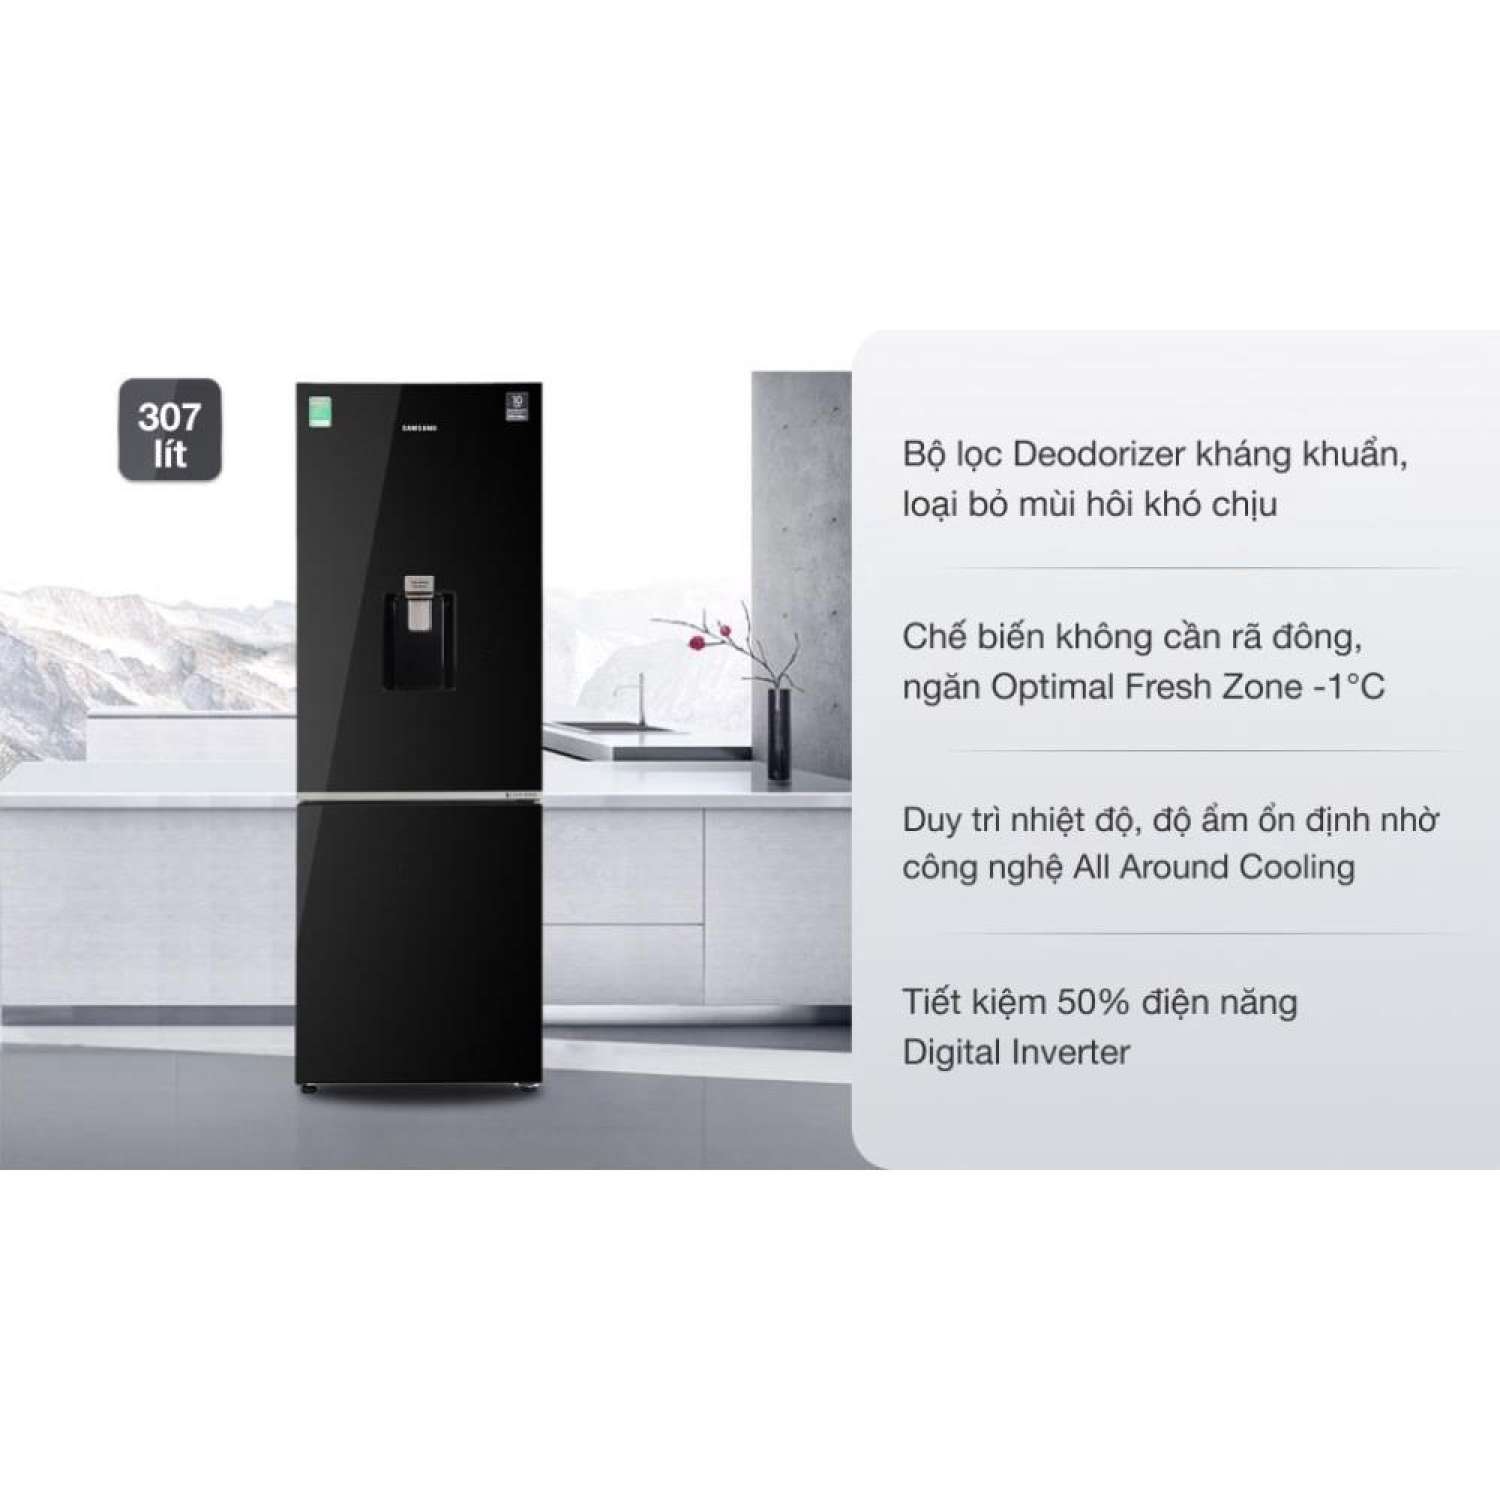 Giá bán Tủ lạnh Samsung Inverter 307 Lít RB30N4190BU/SV Chính hãng BH: 24 tháng trên toàn quốc